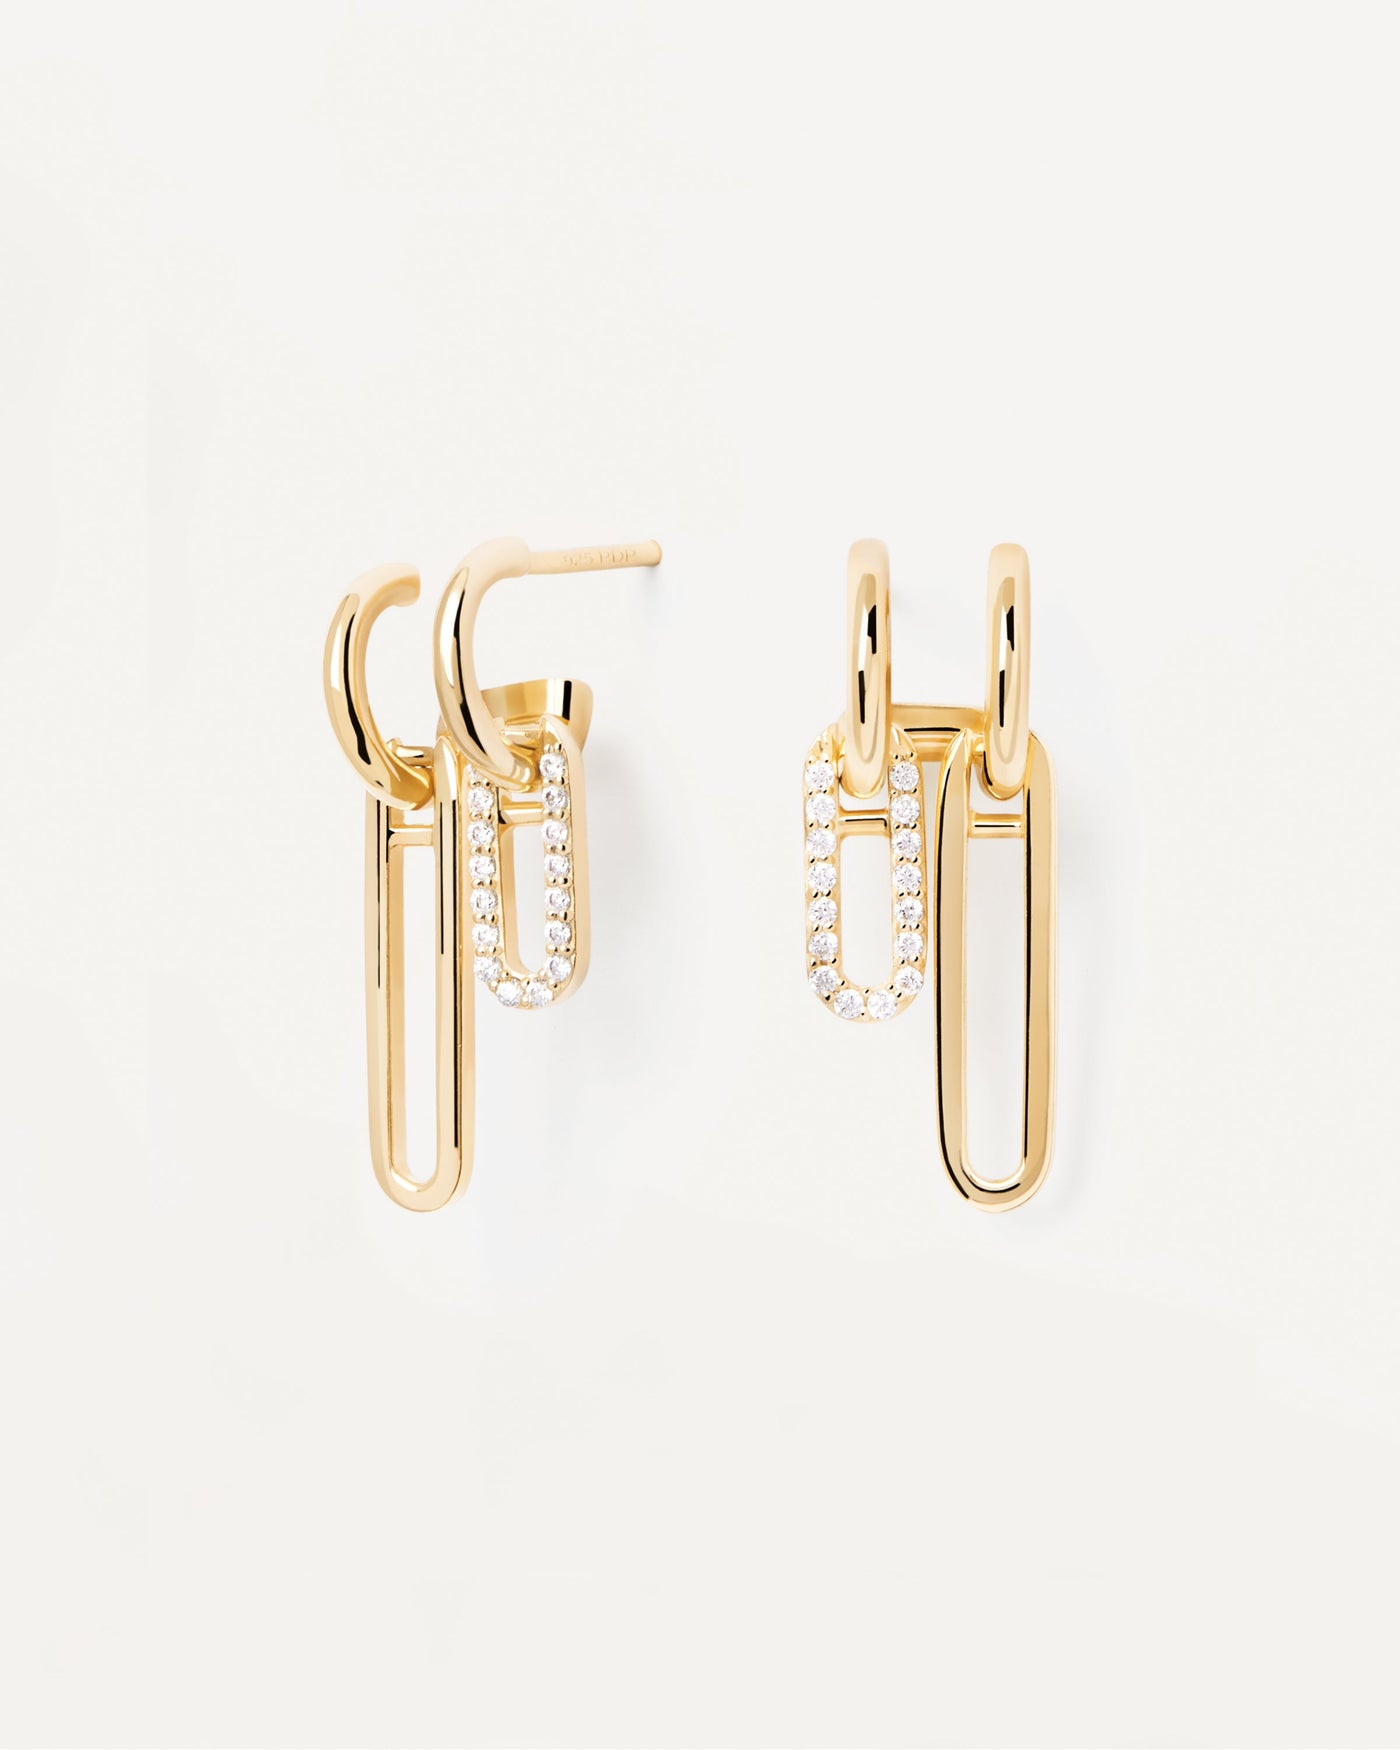 Nexa Ohrringe. Lange asymmetrische Ohrringe aus vergoldetem Silber m weißen Zirkonia. Erhalten Sie die neuesten Produkte von PDPAOLA. Geben Sie Ihre Bestellung sicher auf und erhalten Sie diesen Bestseller.